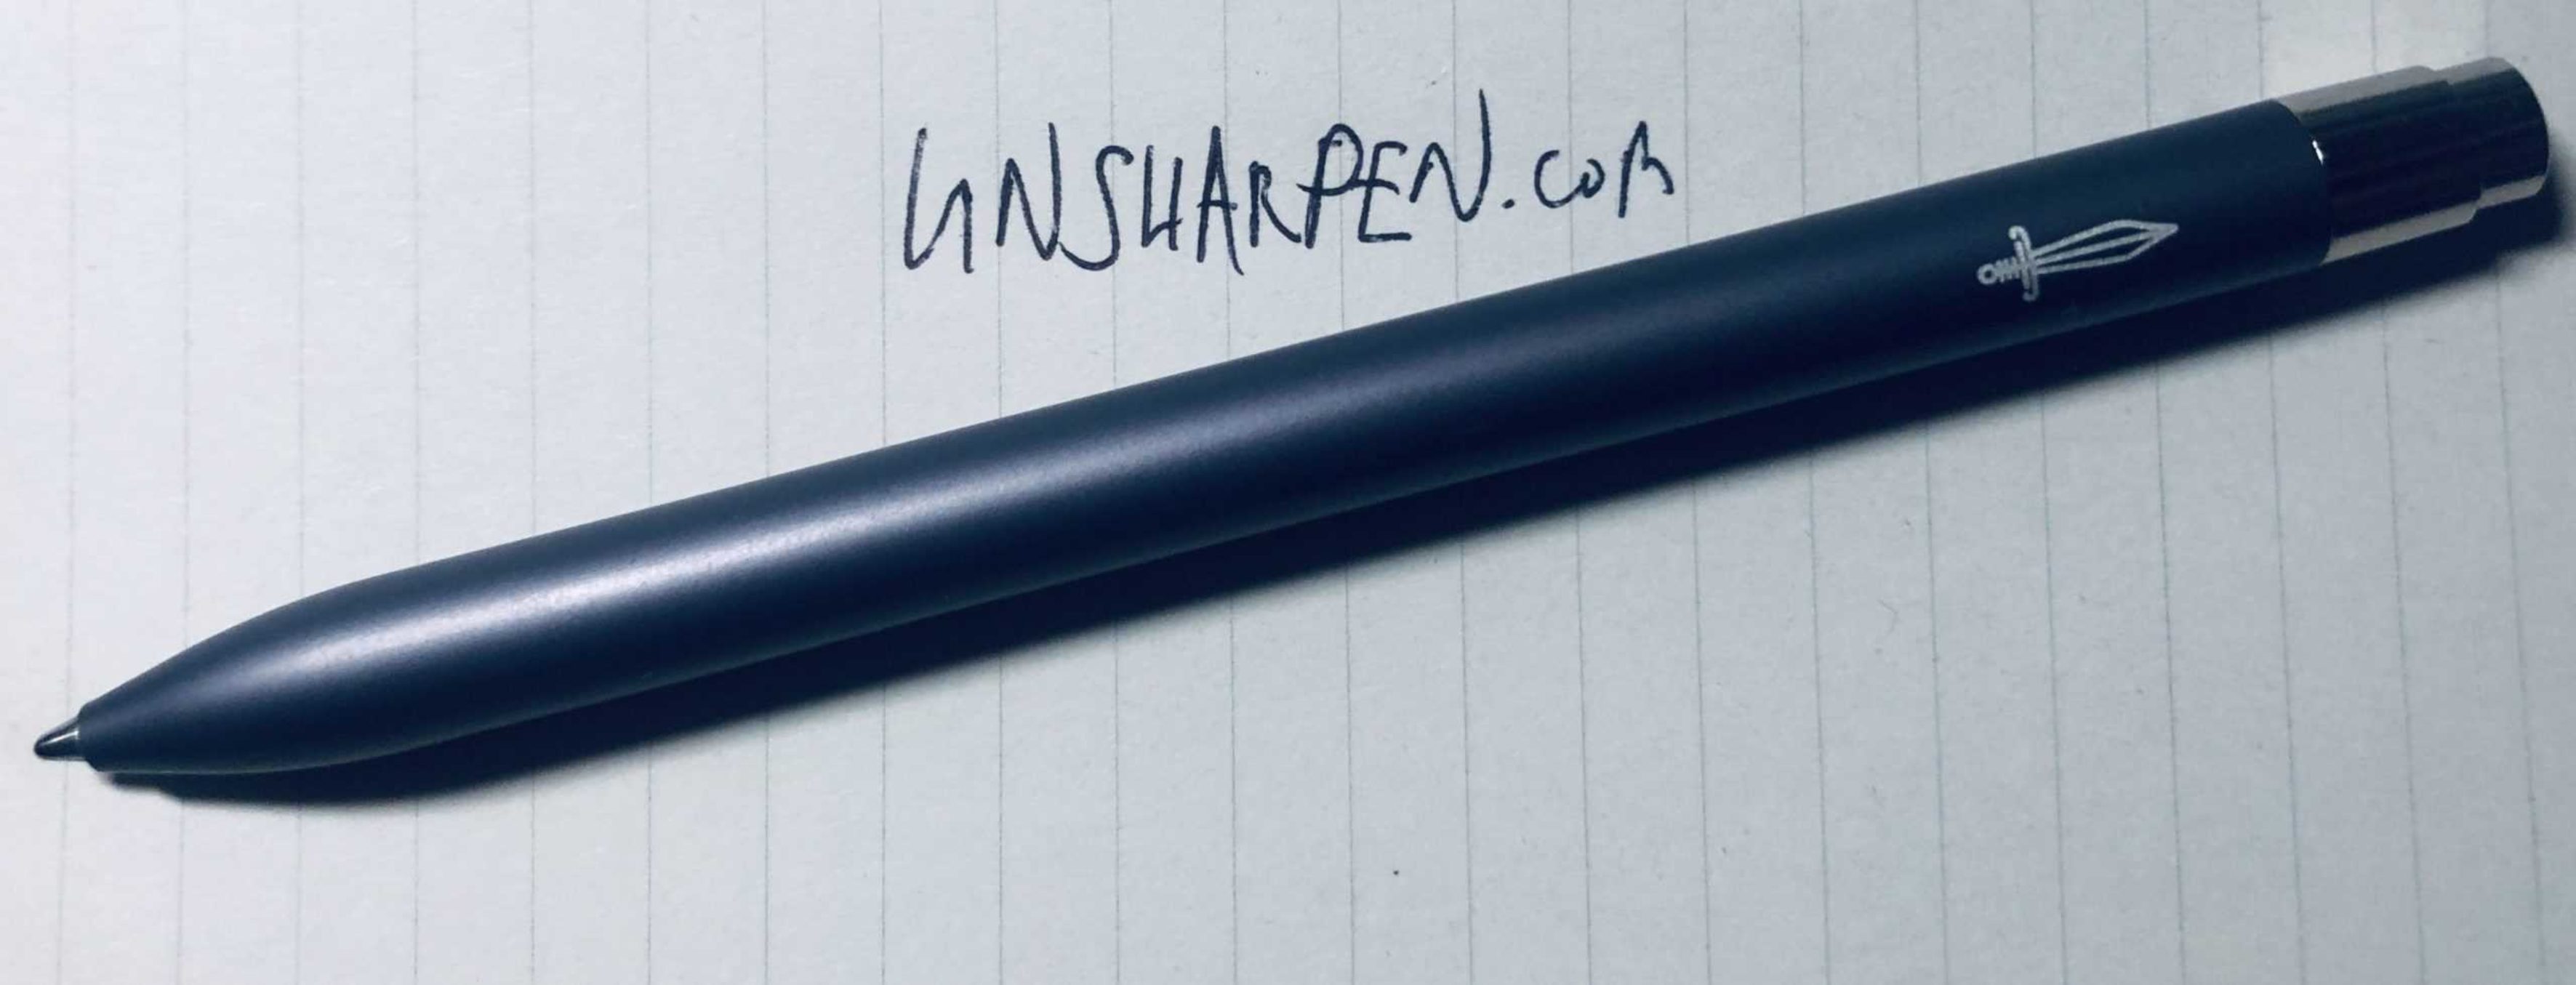 ONWAAR Shipley struik Baron Fig Squire Click Ballpoint Pen | Unsharpen